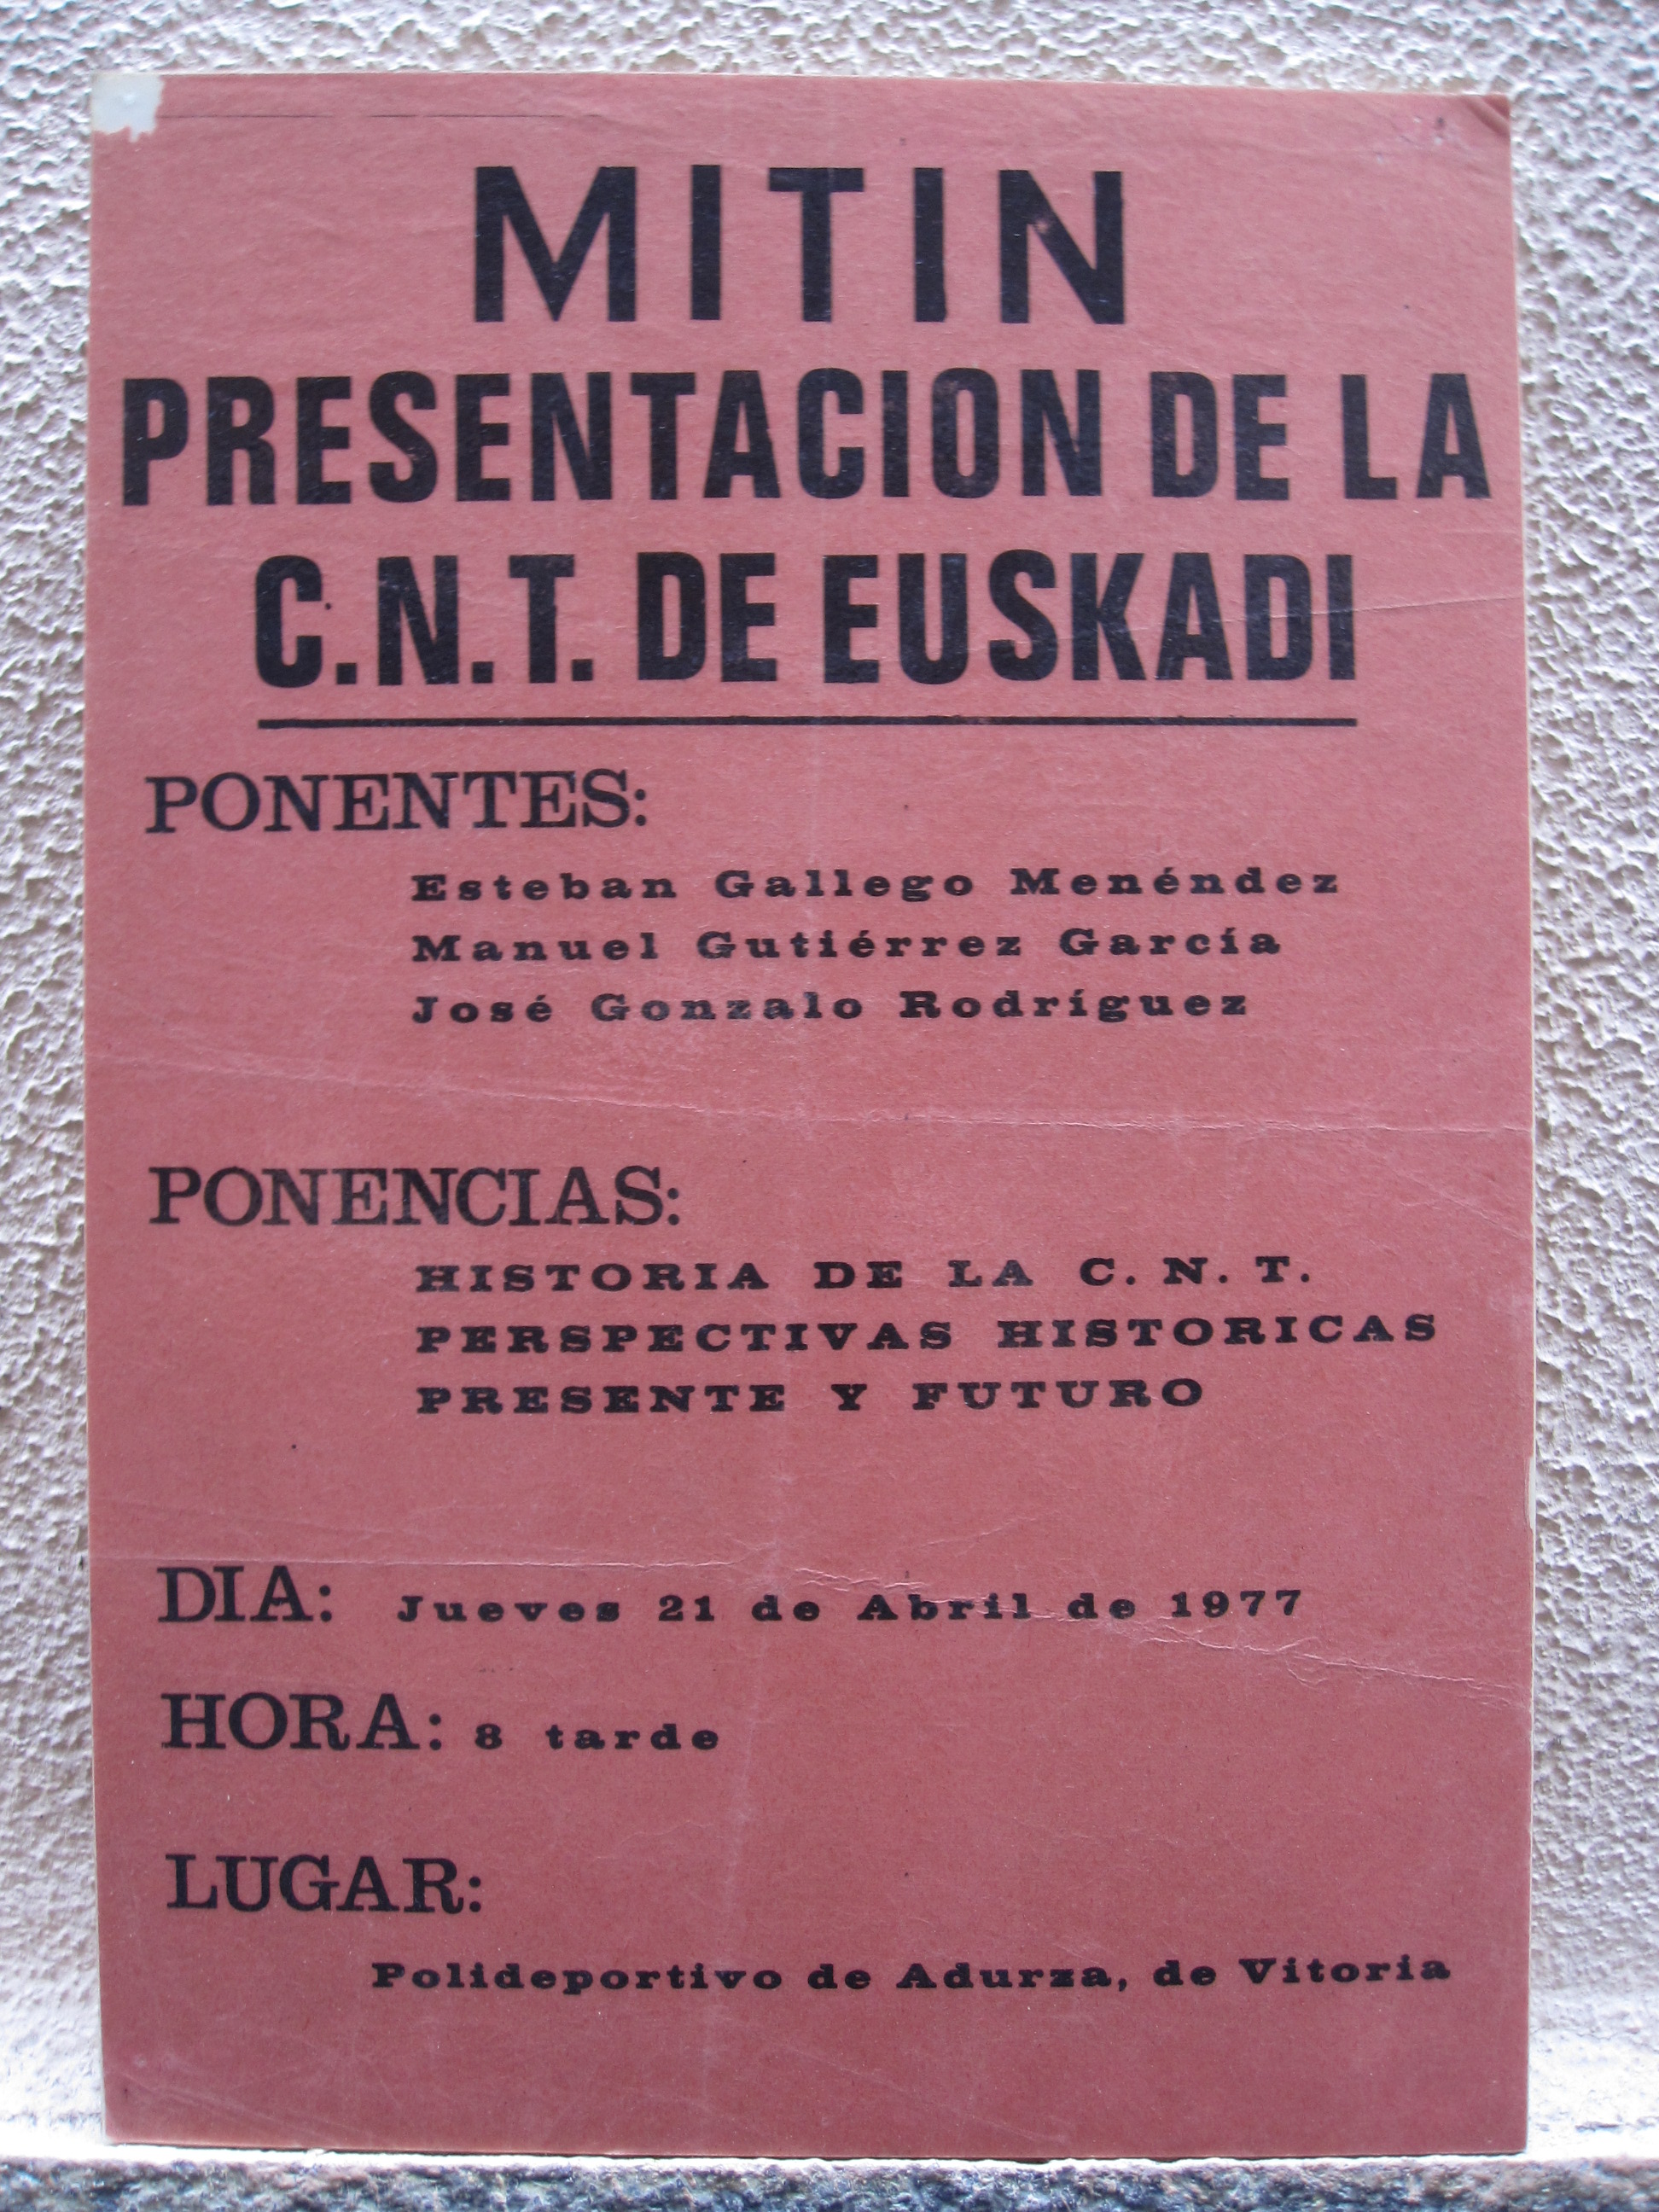 21 de abril de 1977. MITIN PRESENTACIÓN DE LA C.N.T. DE EUSKADI